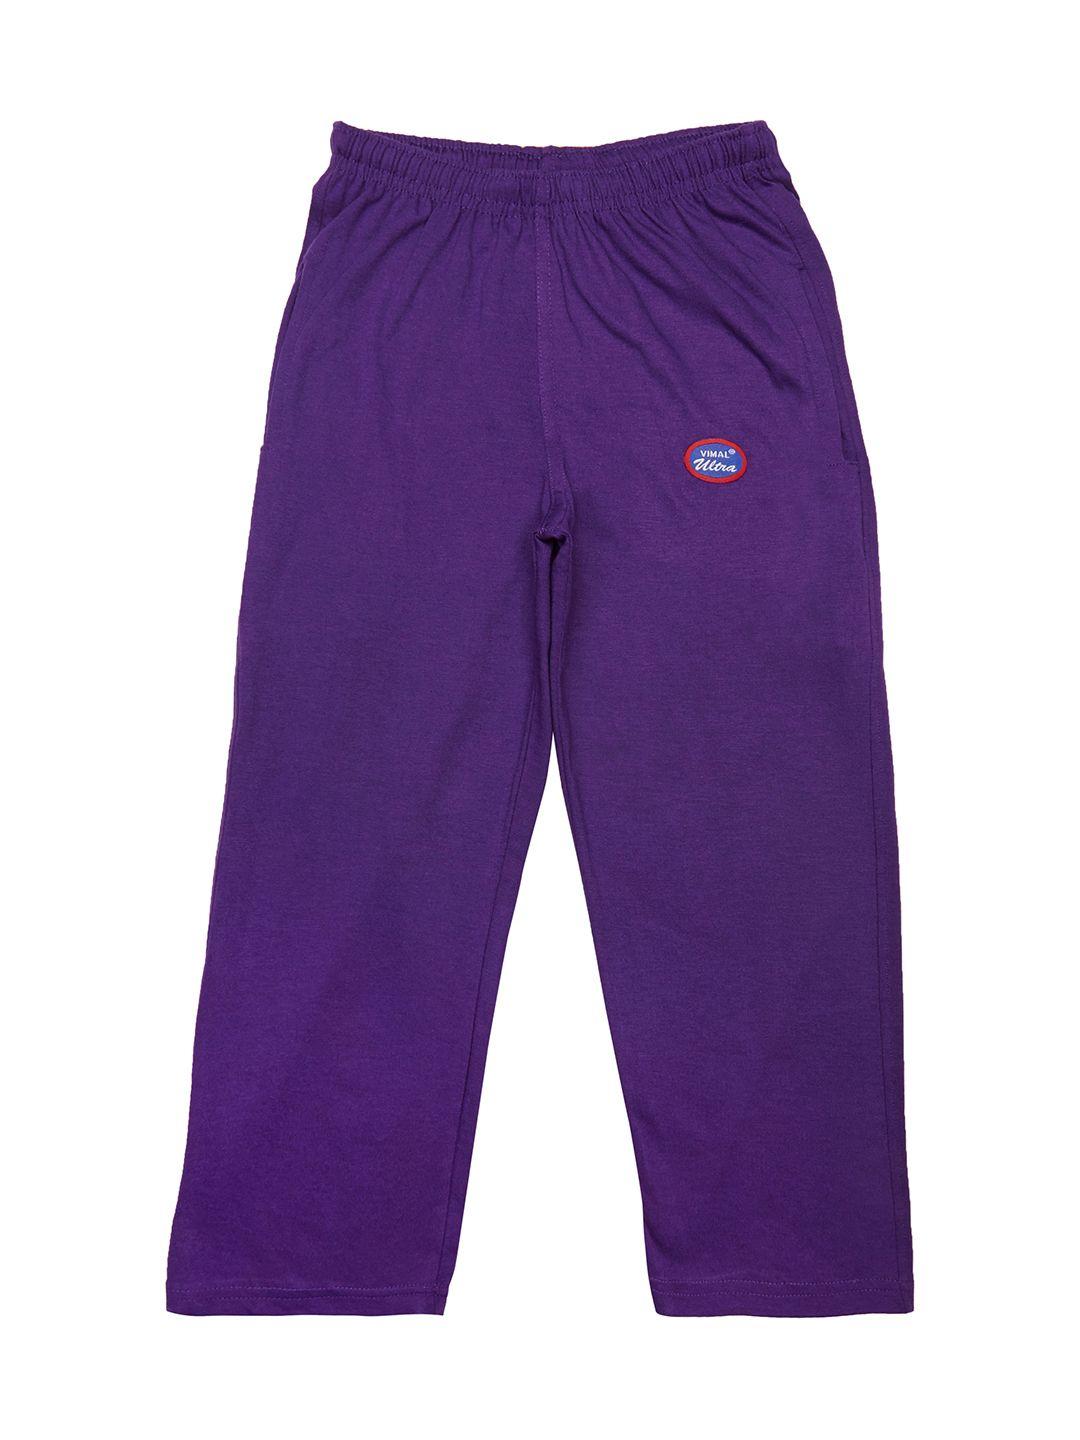 vimal jonney boys purple solid slim fit track pants